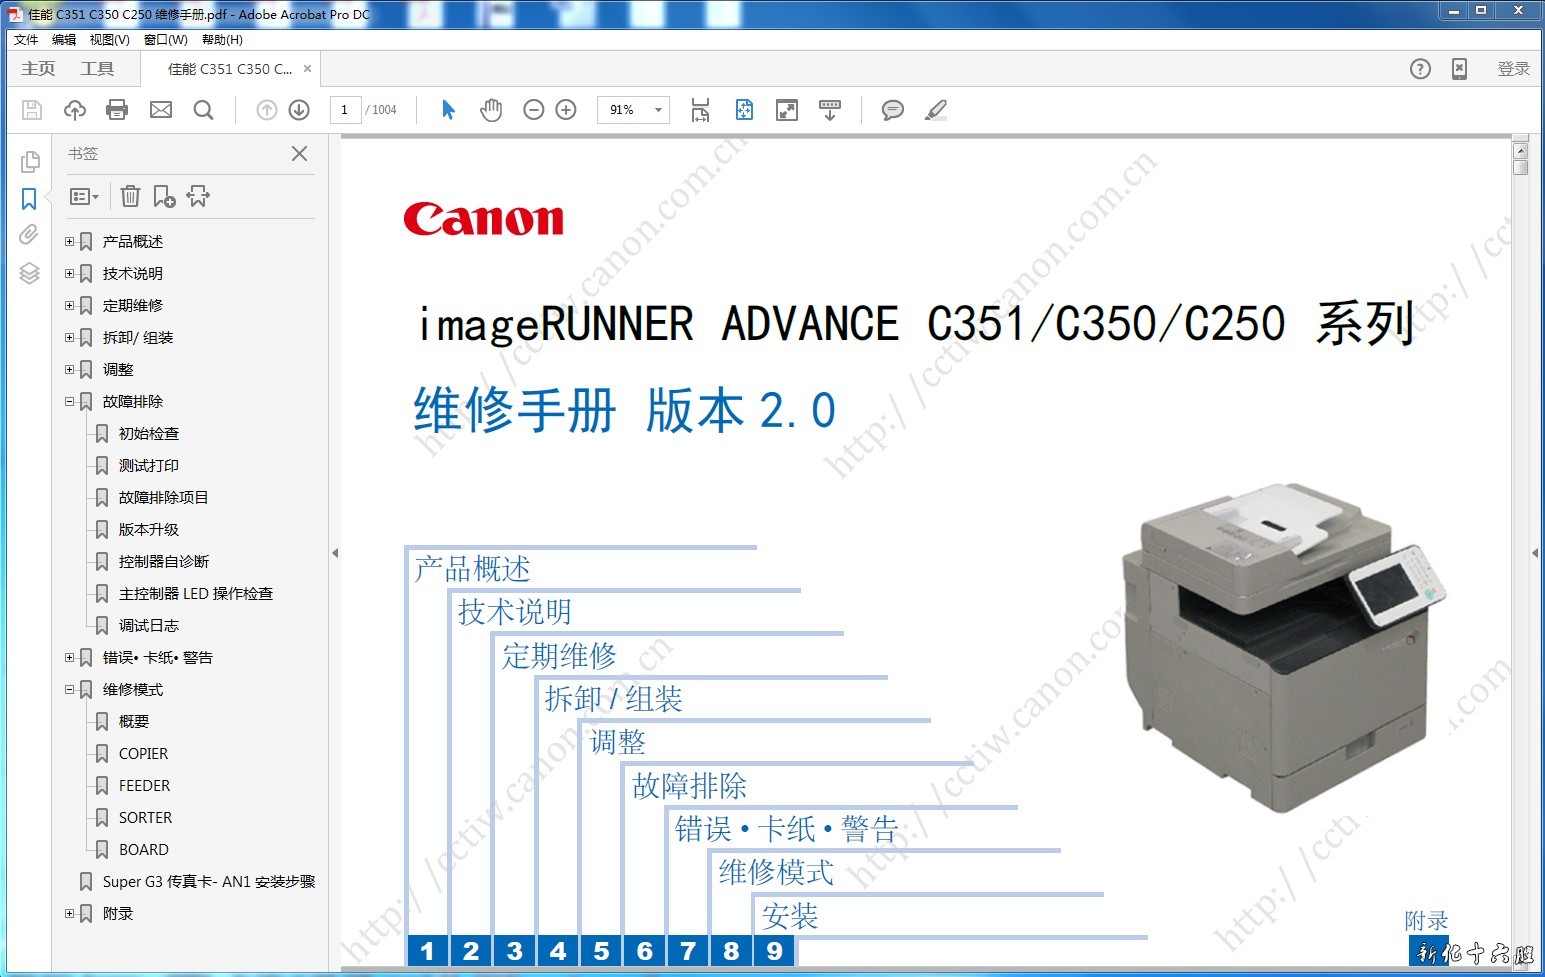 佳能IR ADV C351 C350 C250 彩色复印机中文维修手册 零件手册.jpg